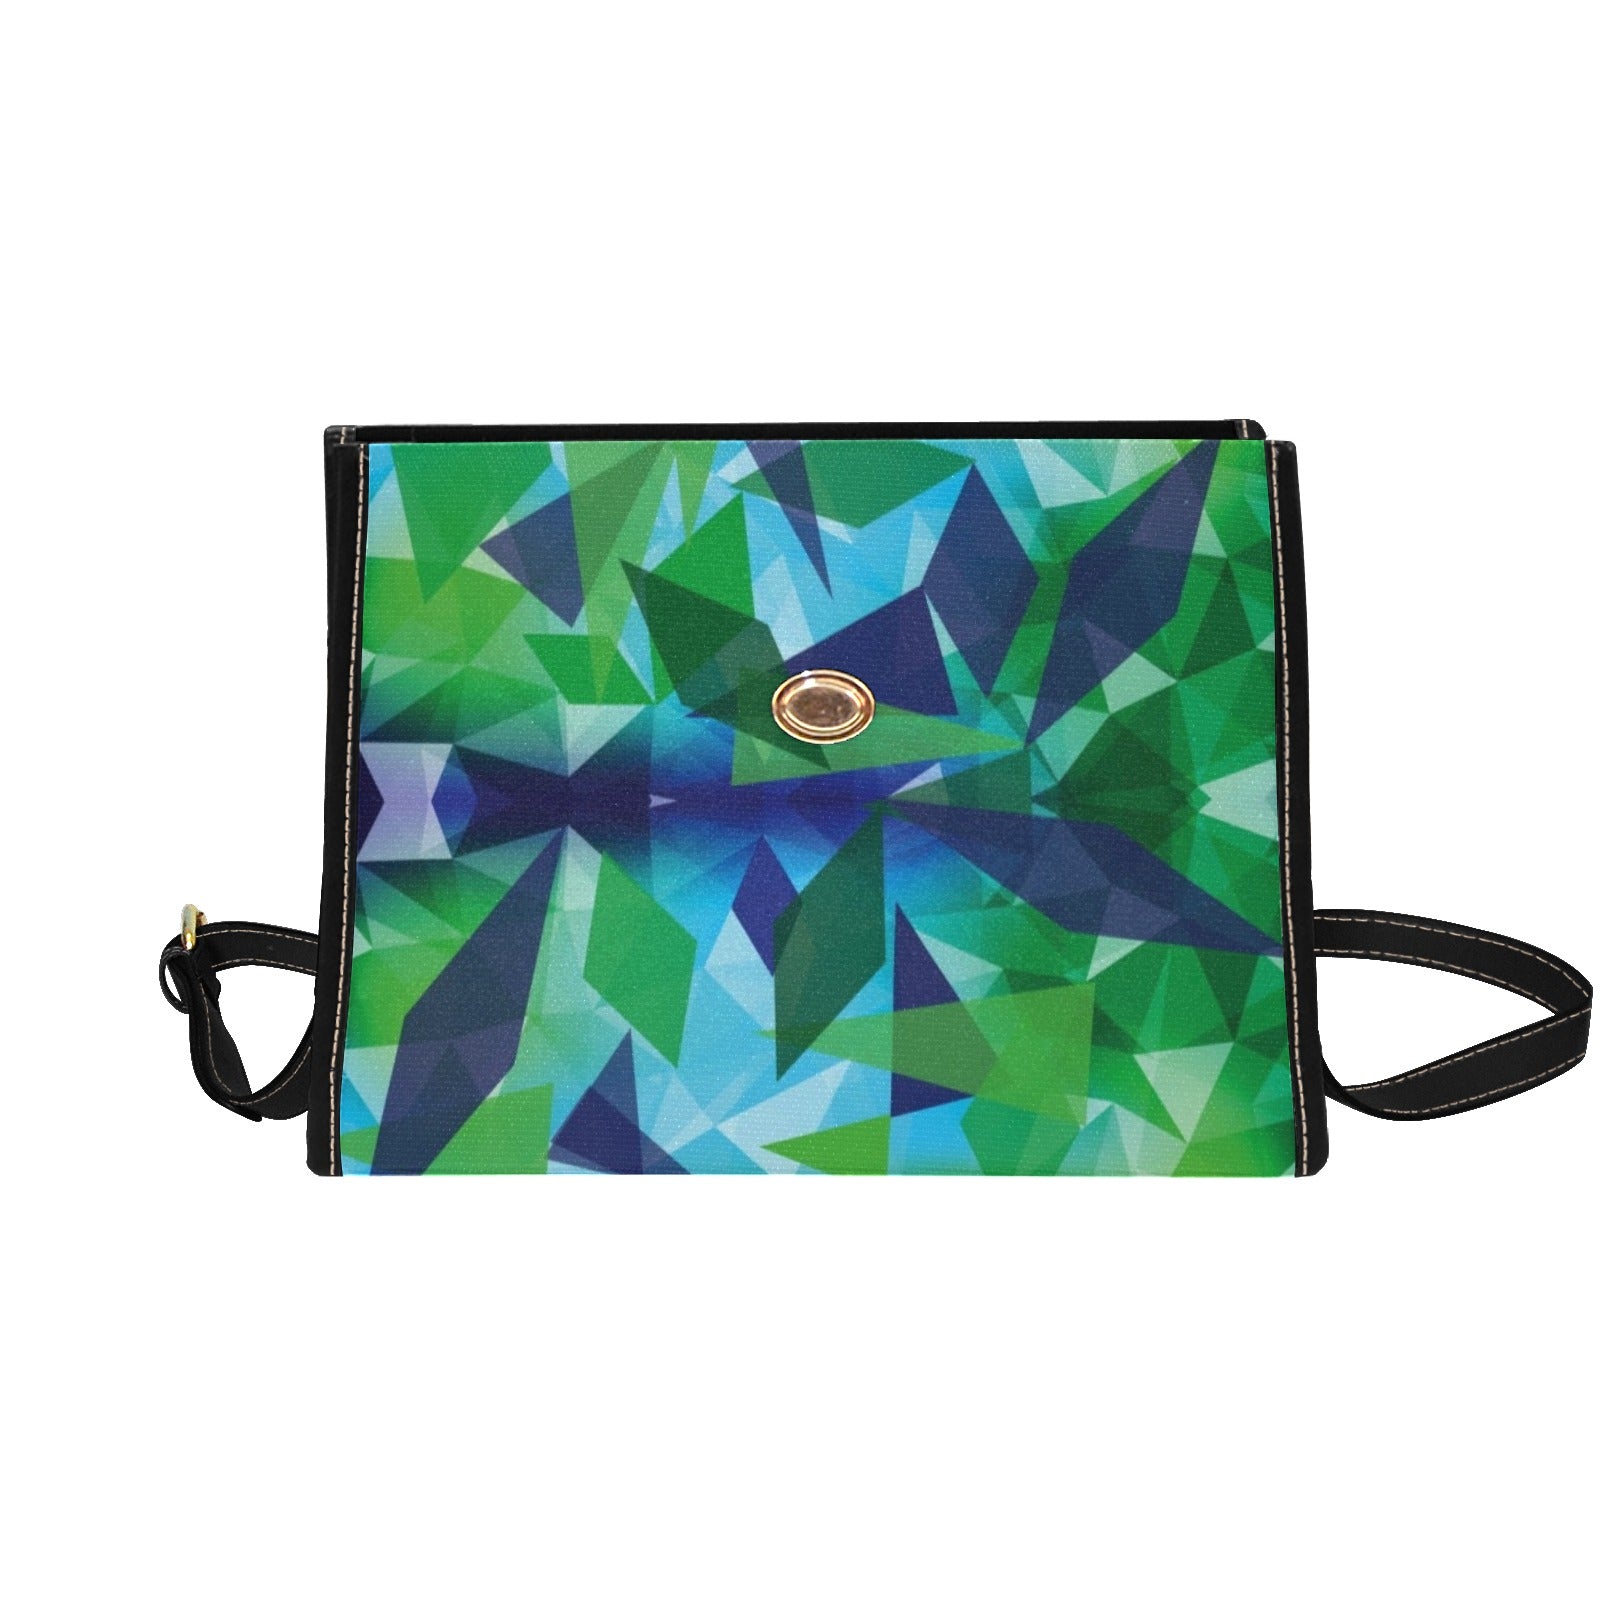 Polygon - Waterproof Canvas Handbag